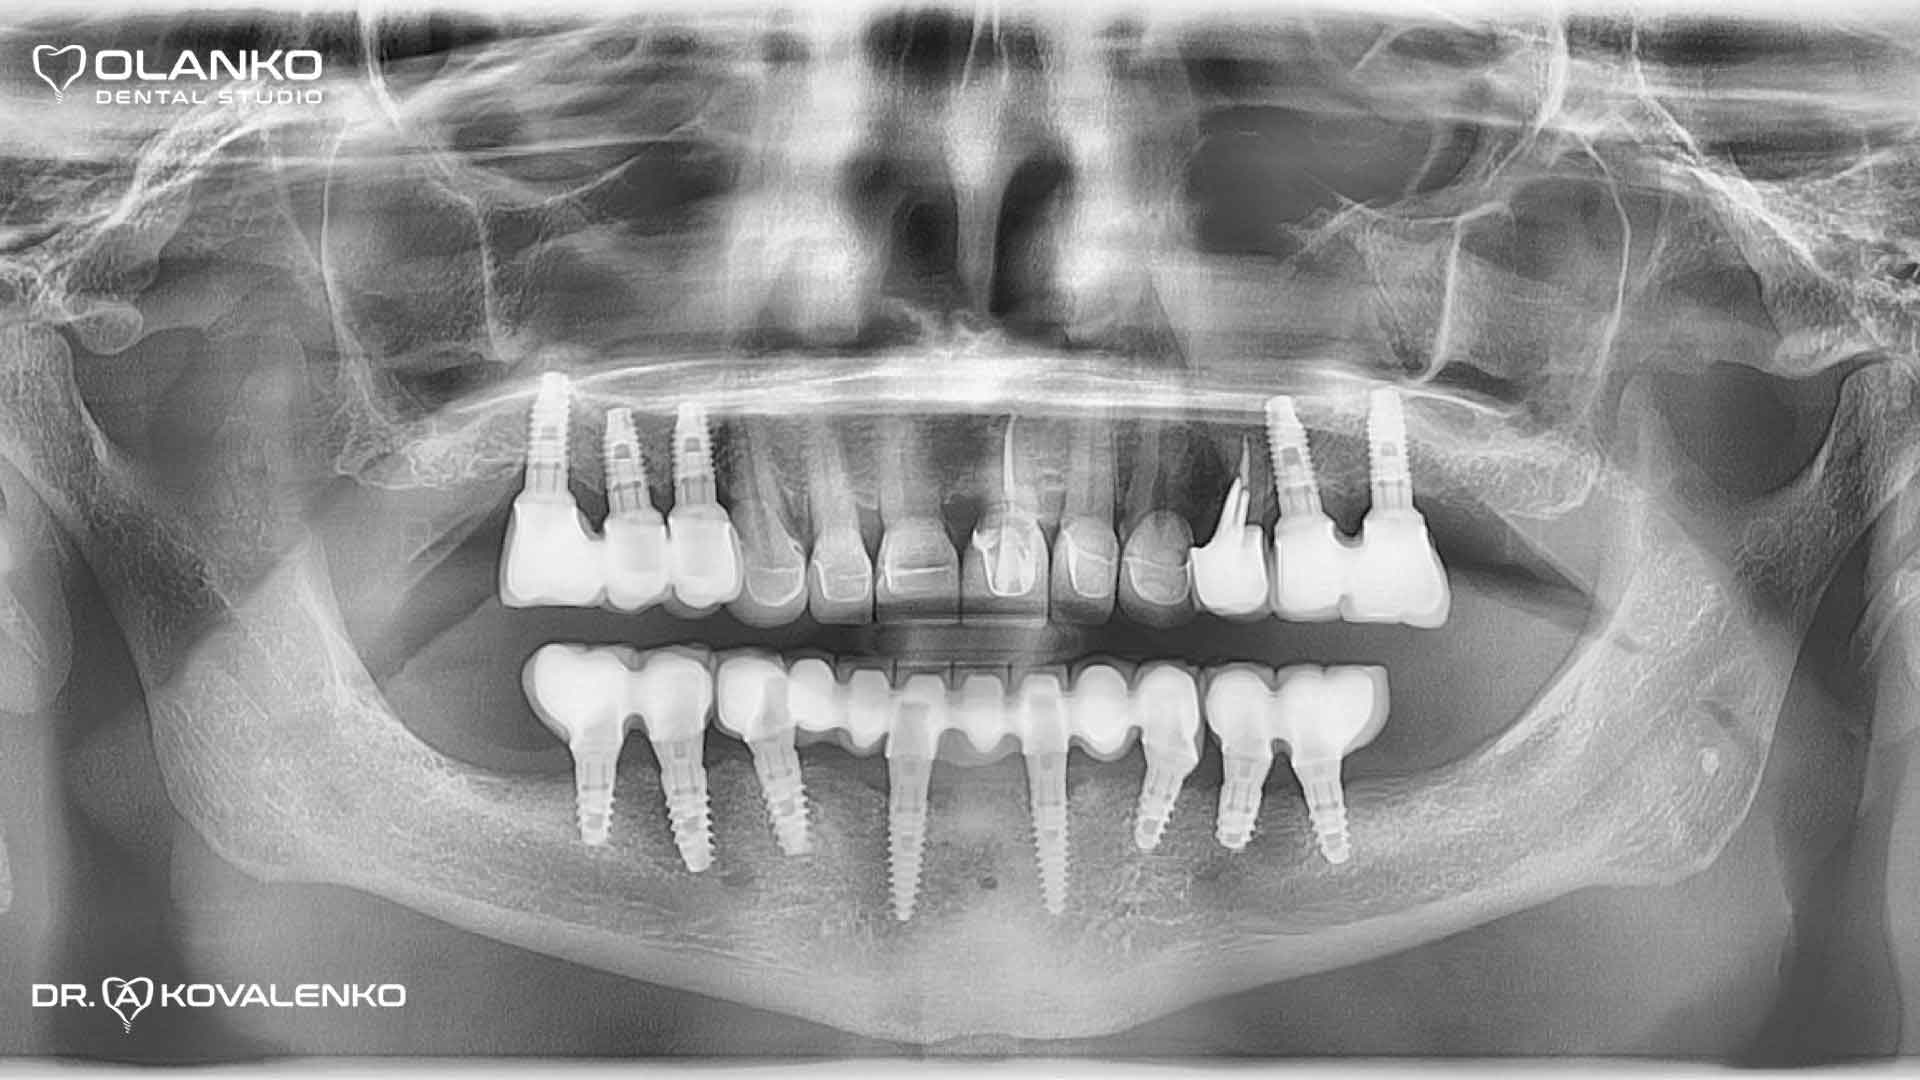 Контрольний панорамний рентген знімок через 8 років після протезування, стабільний рівень кістки навколо зубних імплантатів